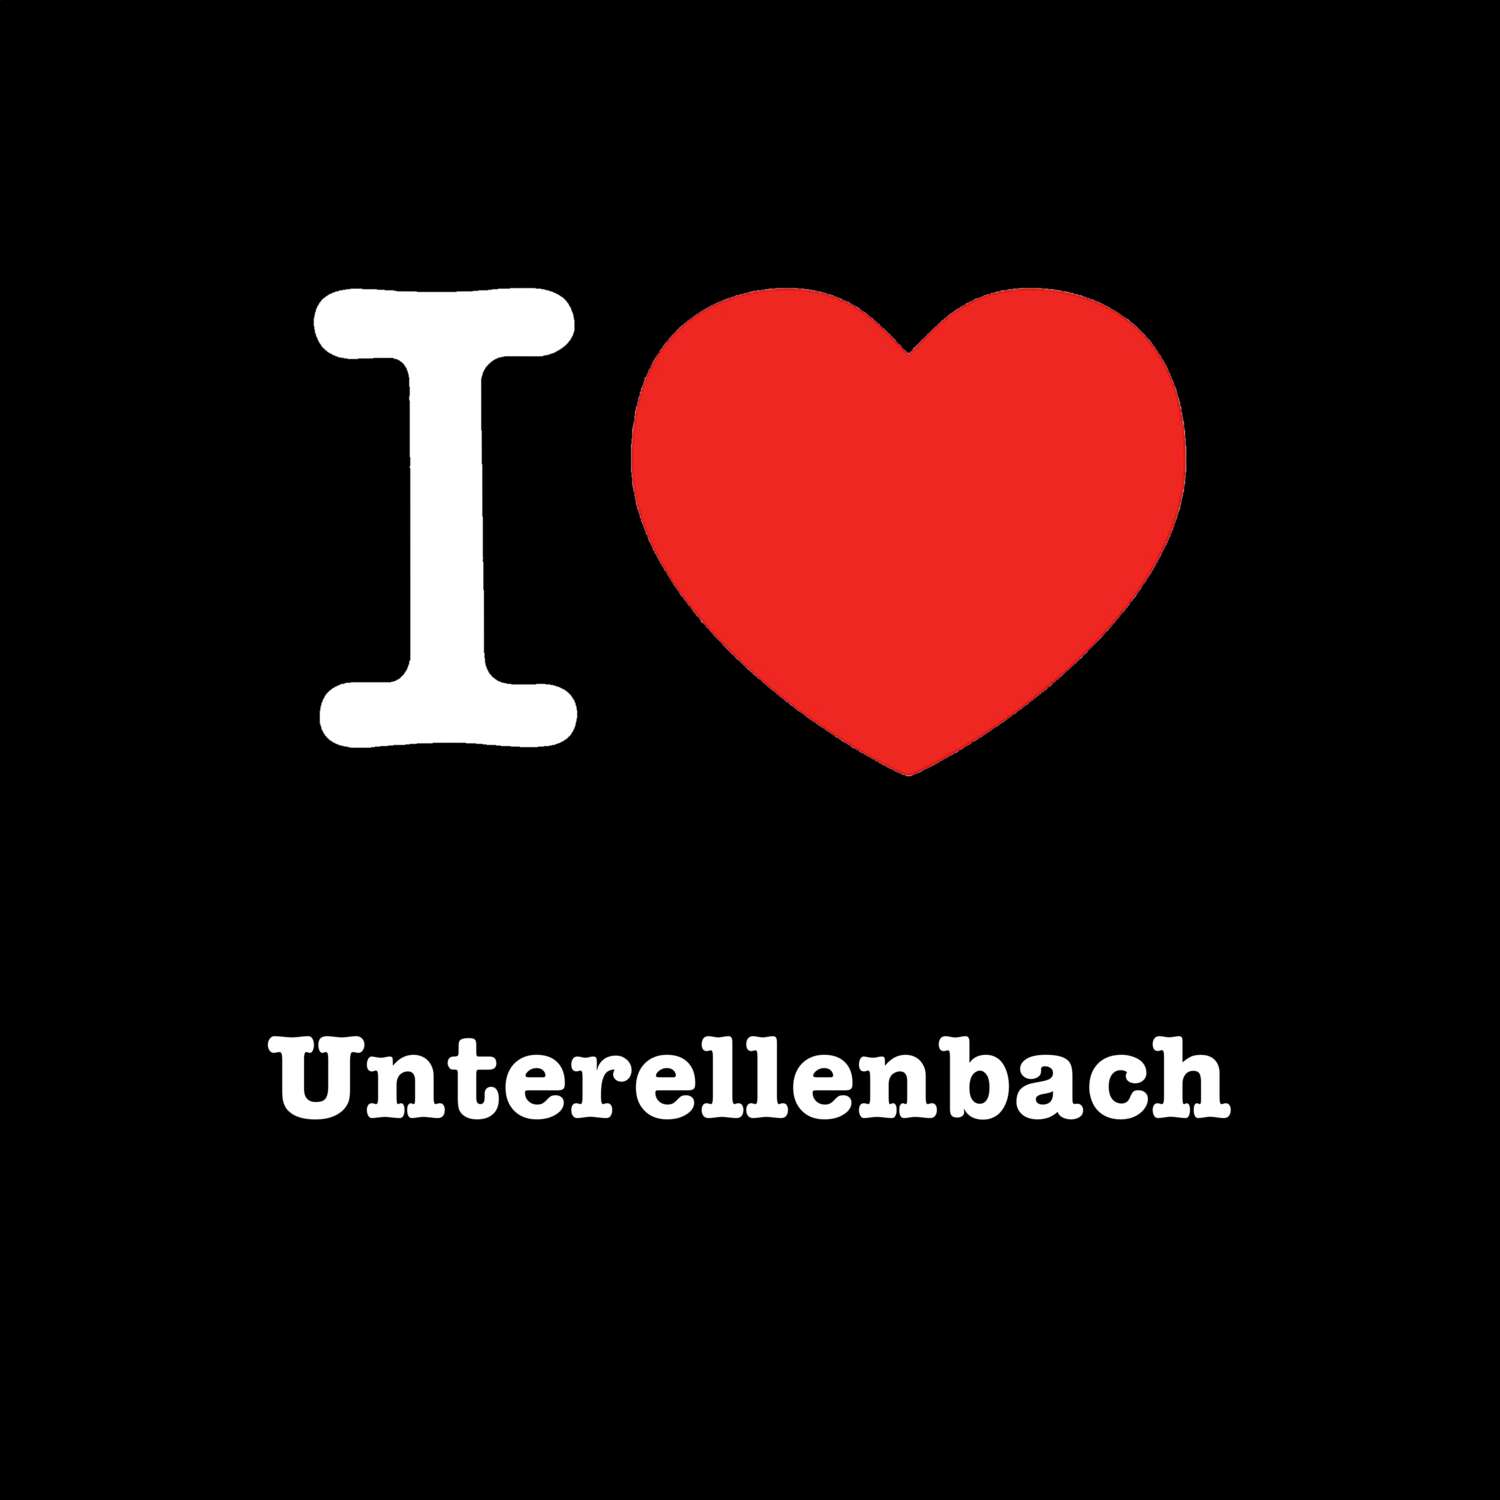 Unterellenbach T-Shirt »I love«